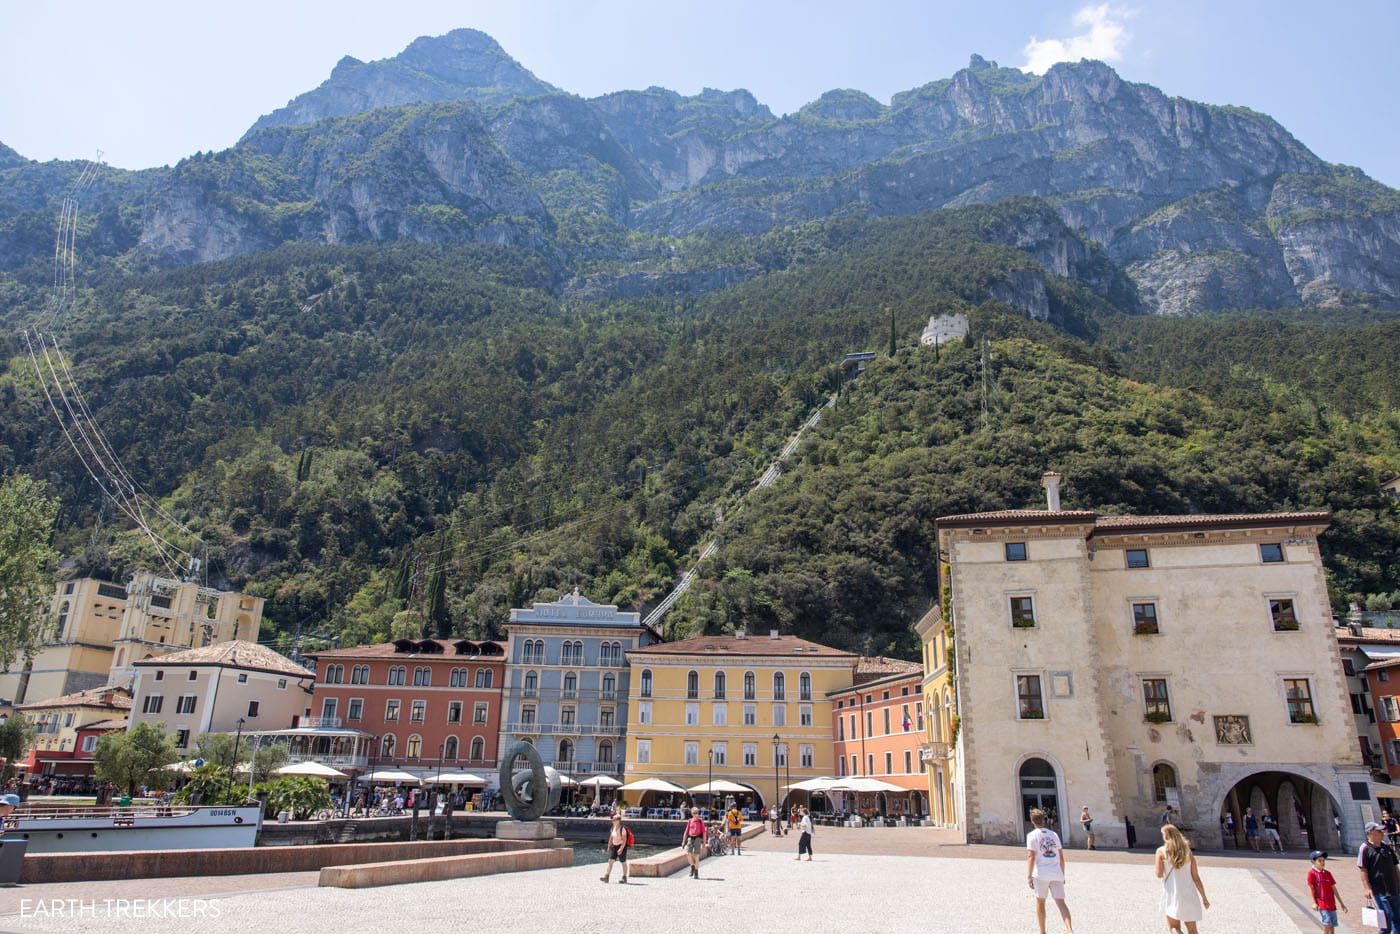 What to do in Riva del Garda